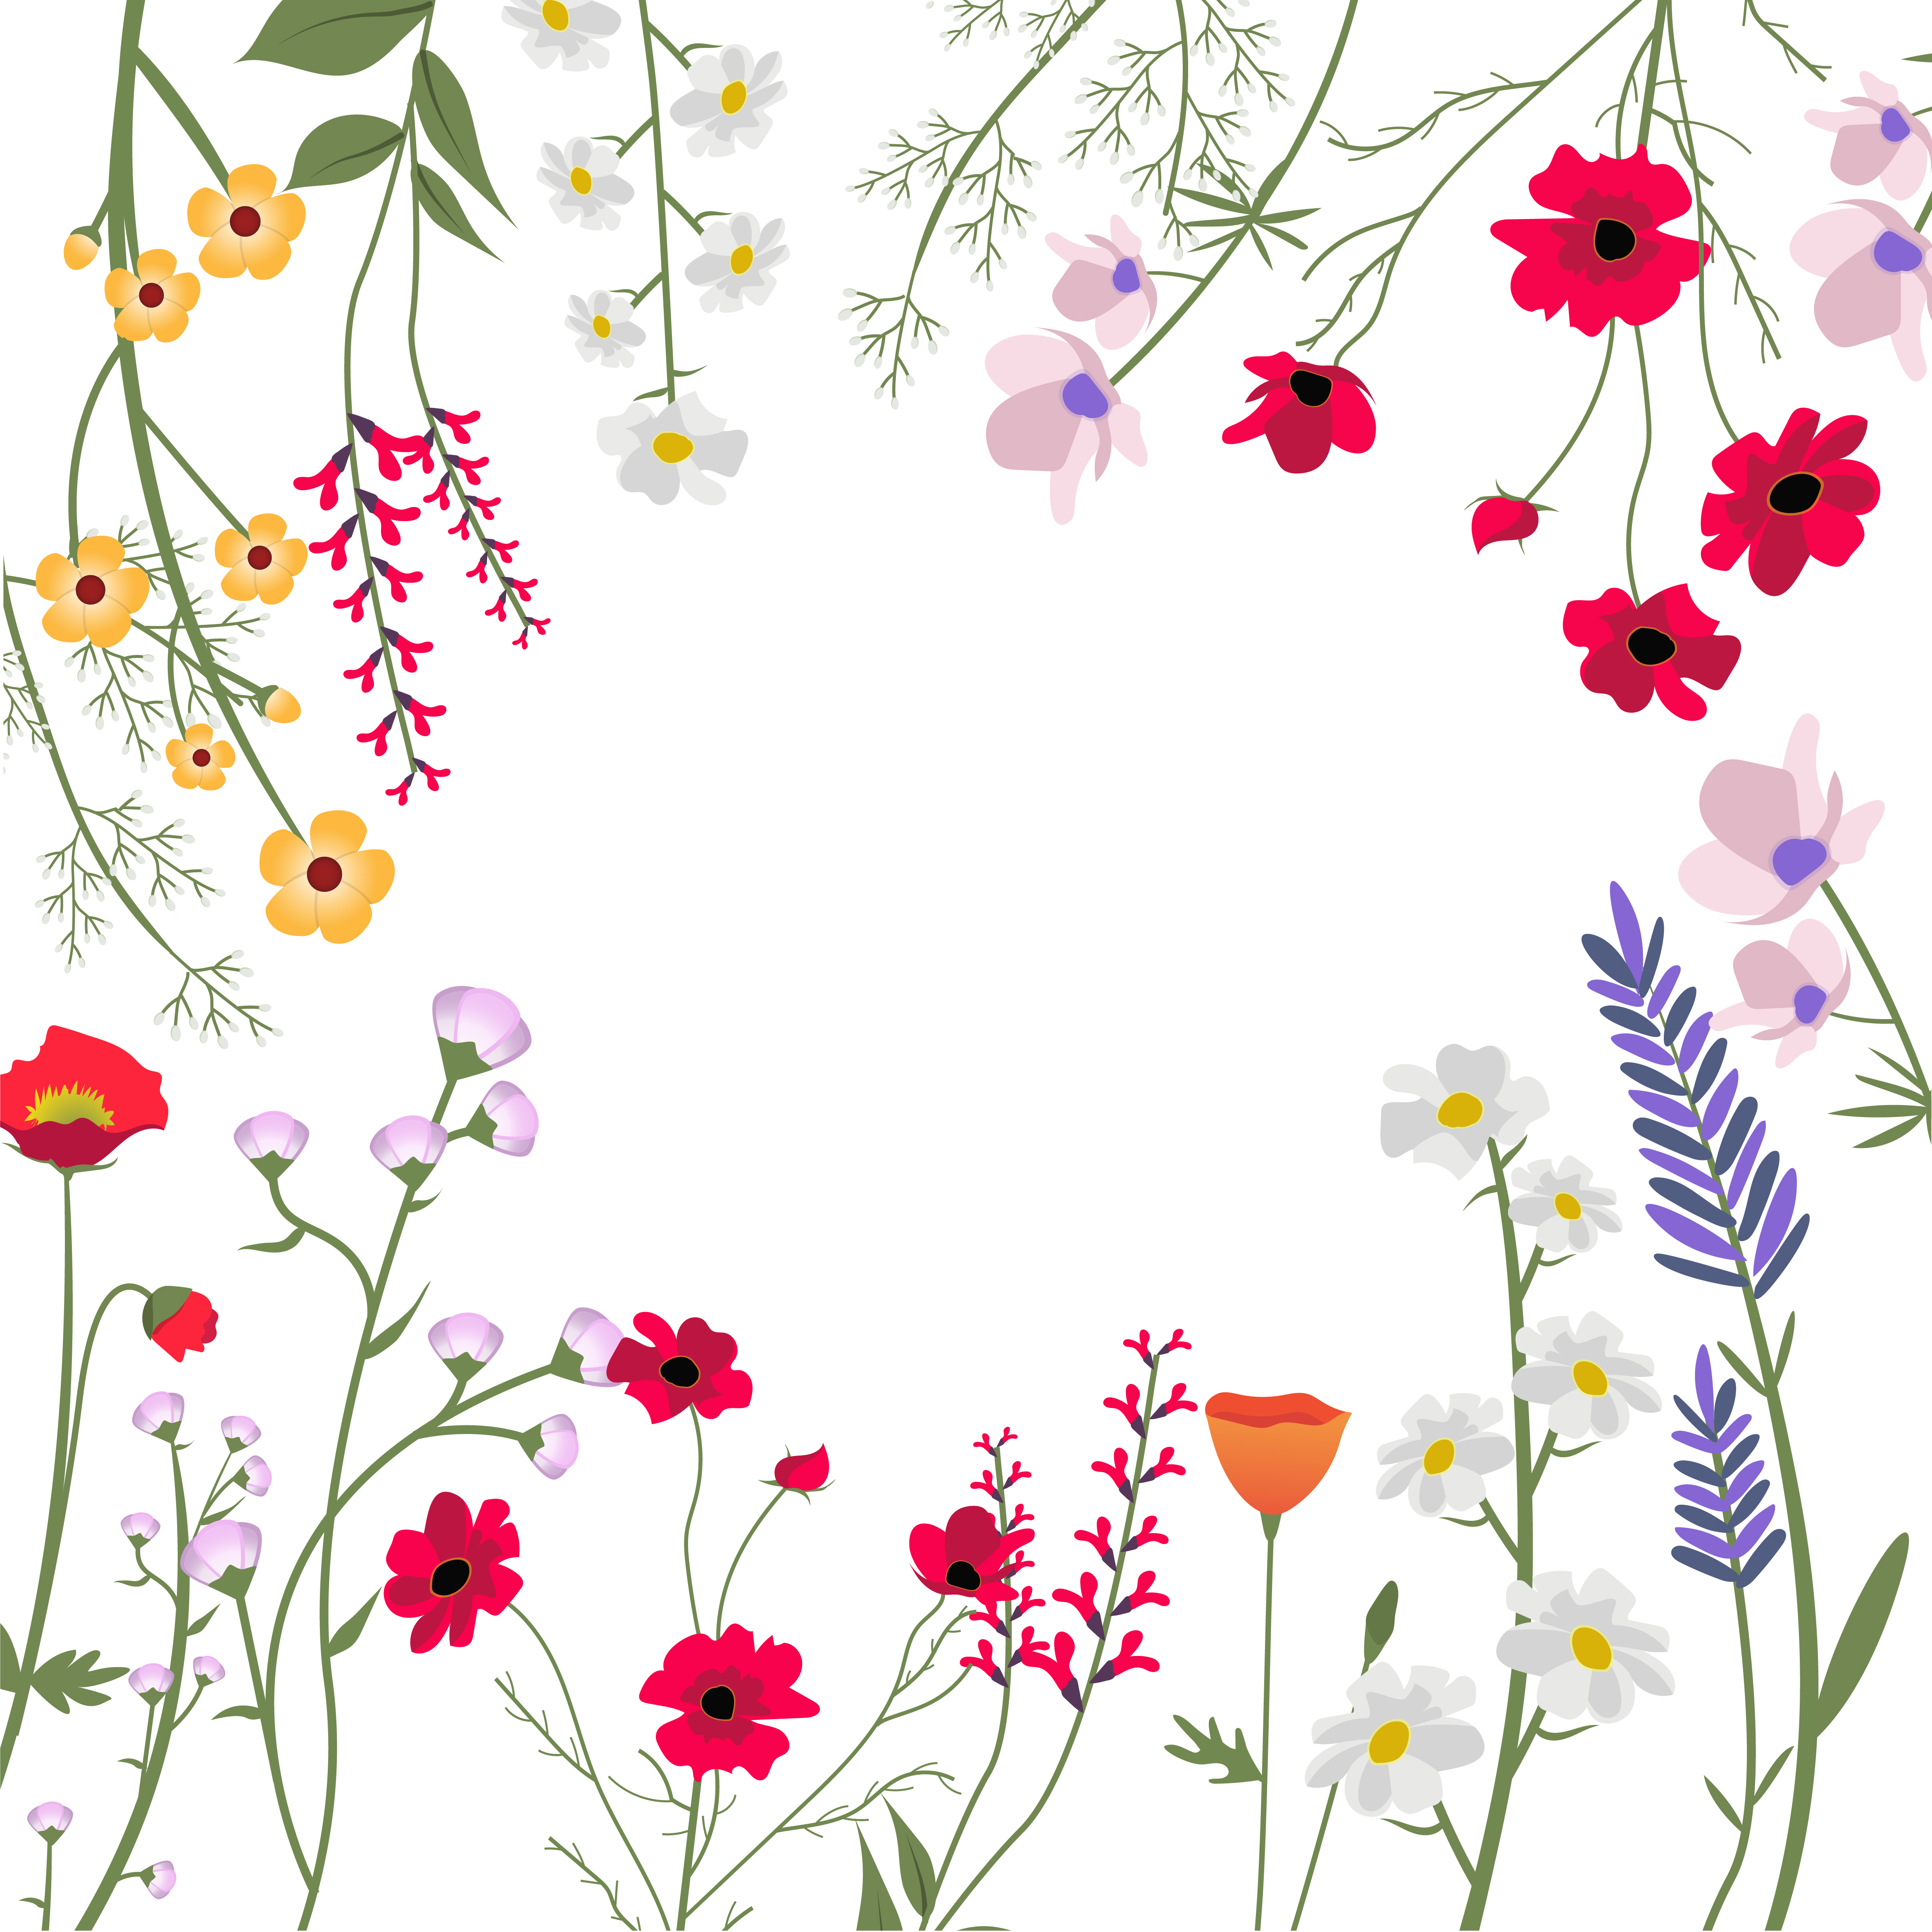 Wild Flowers Vector Illustration Download Free Vectors